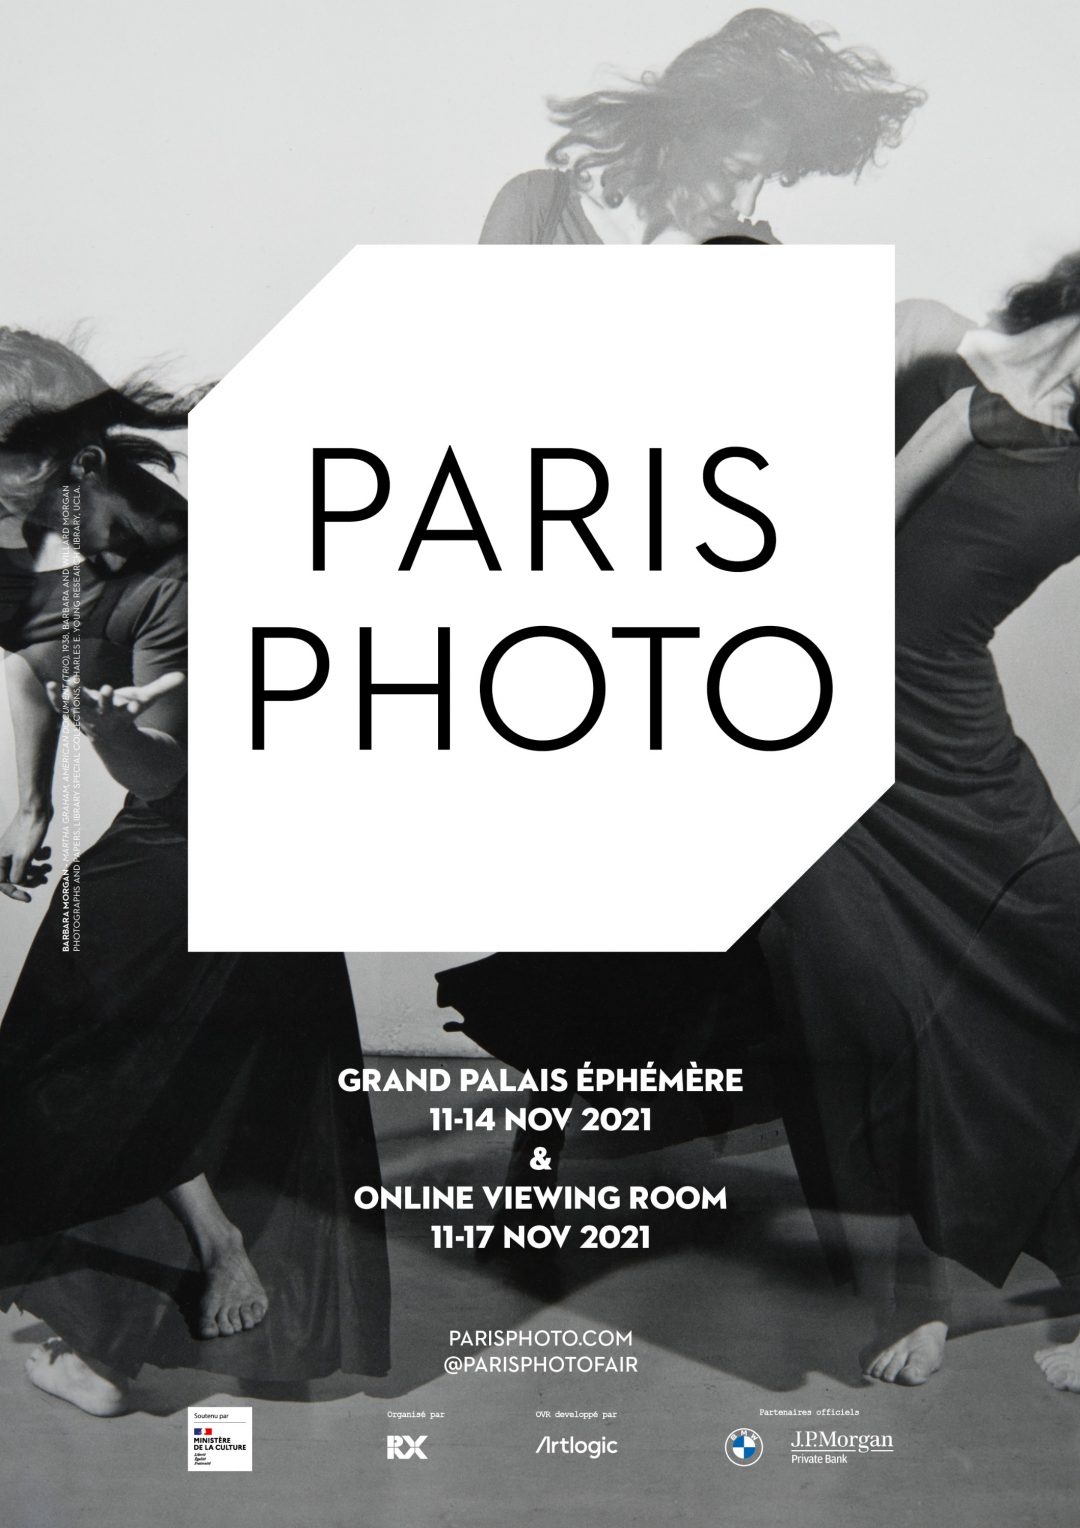 Paris Photo 2021: la fotografia d’autore non ama gli smartphone